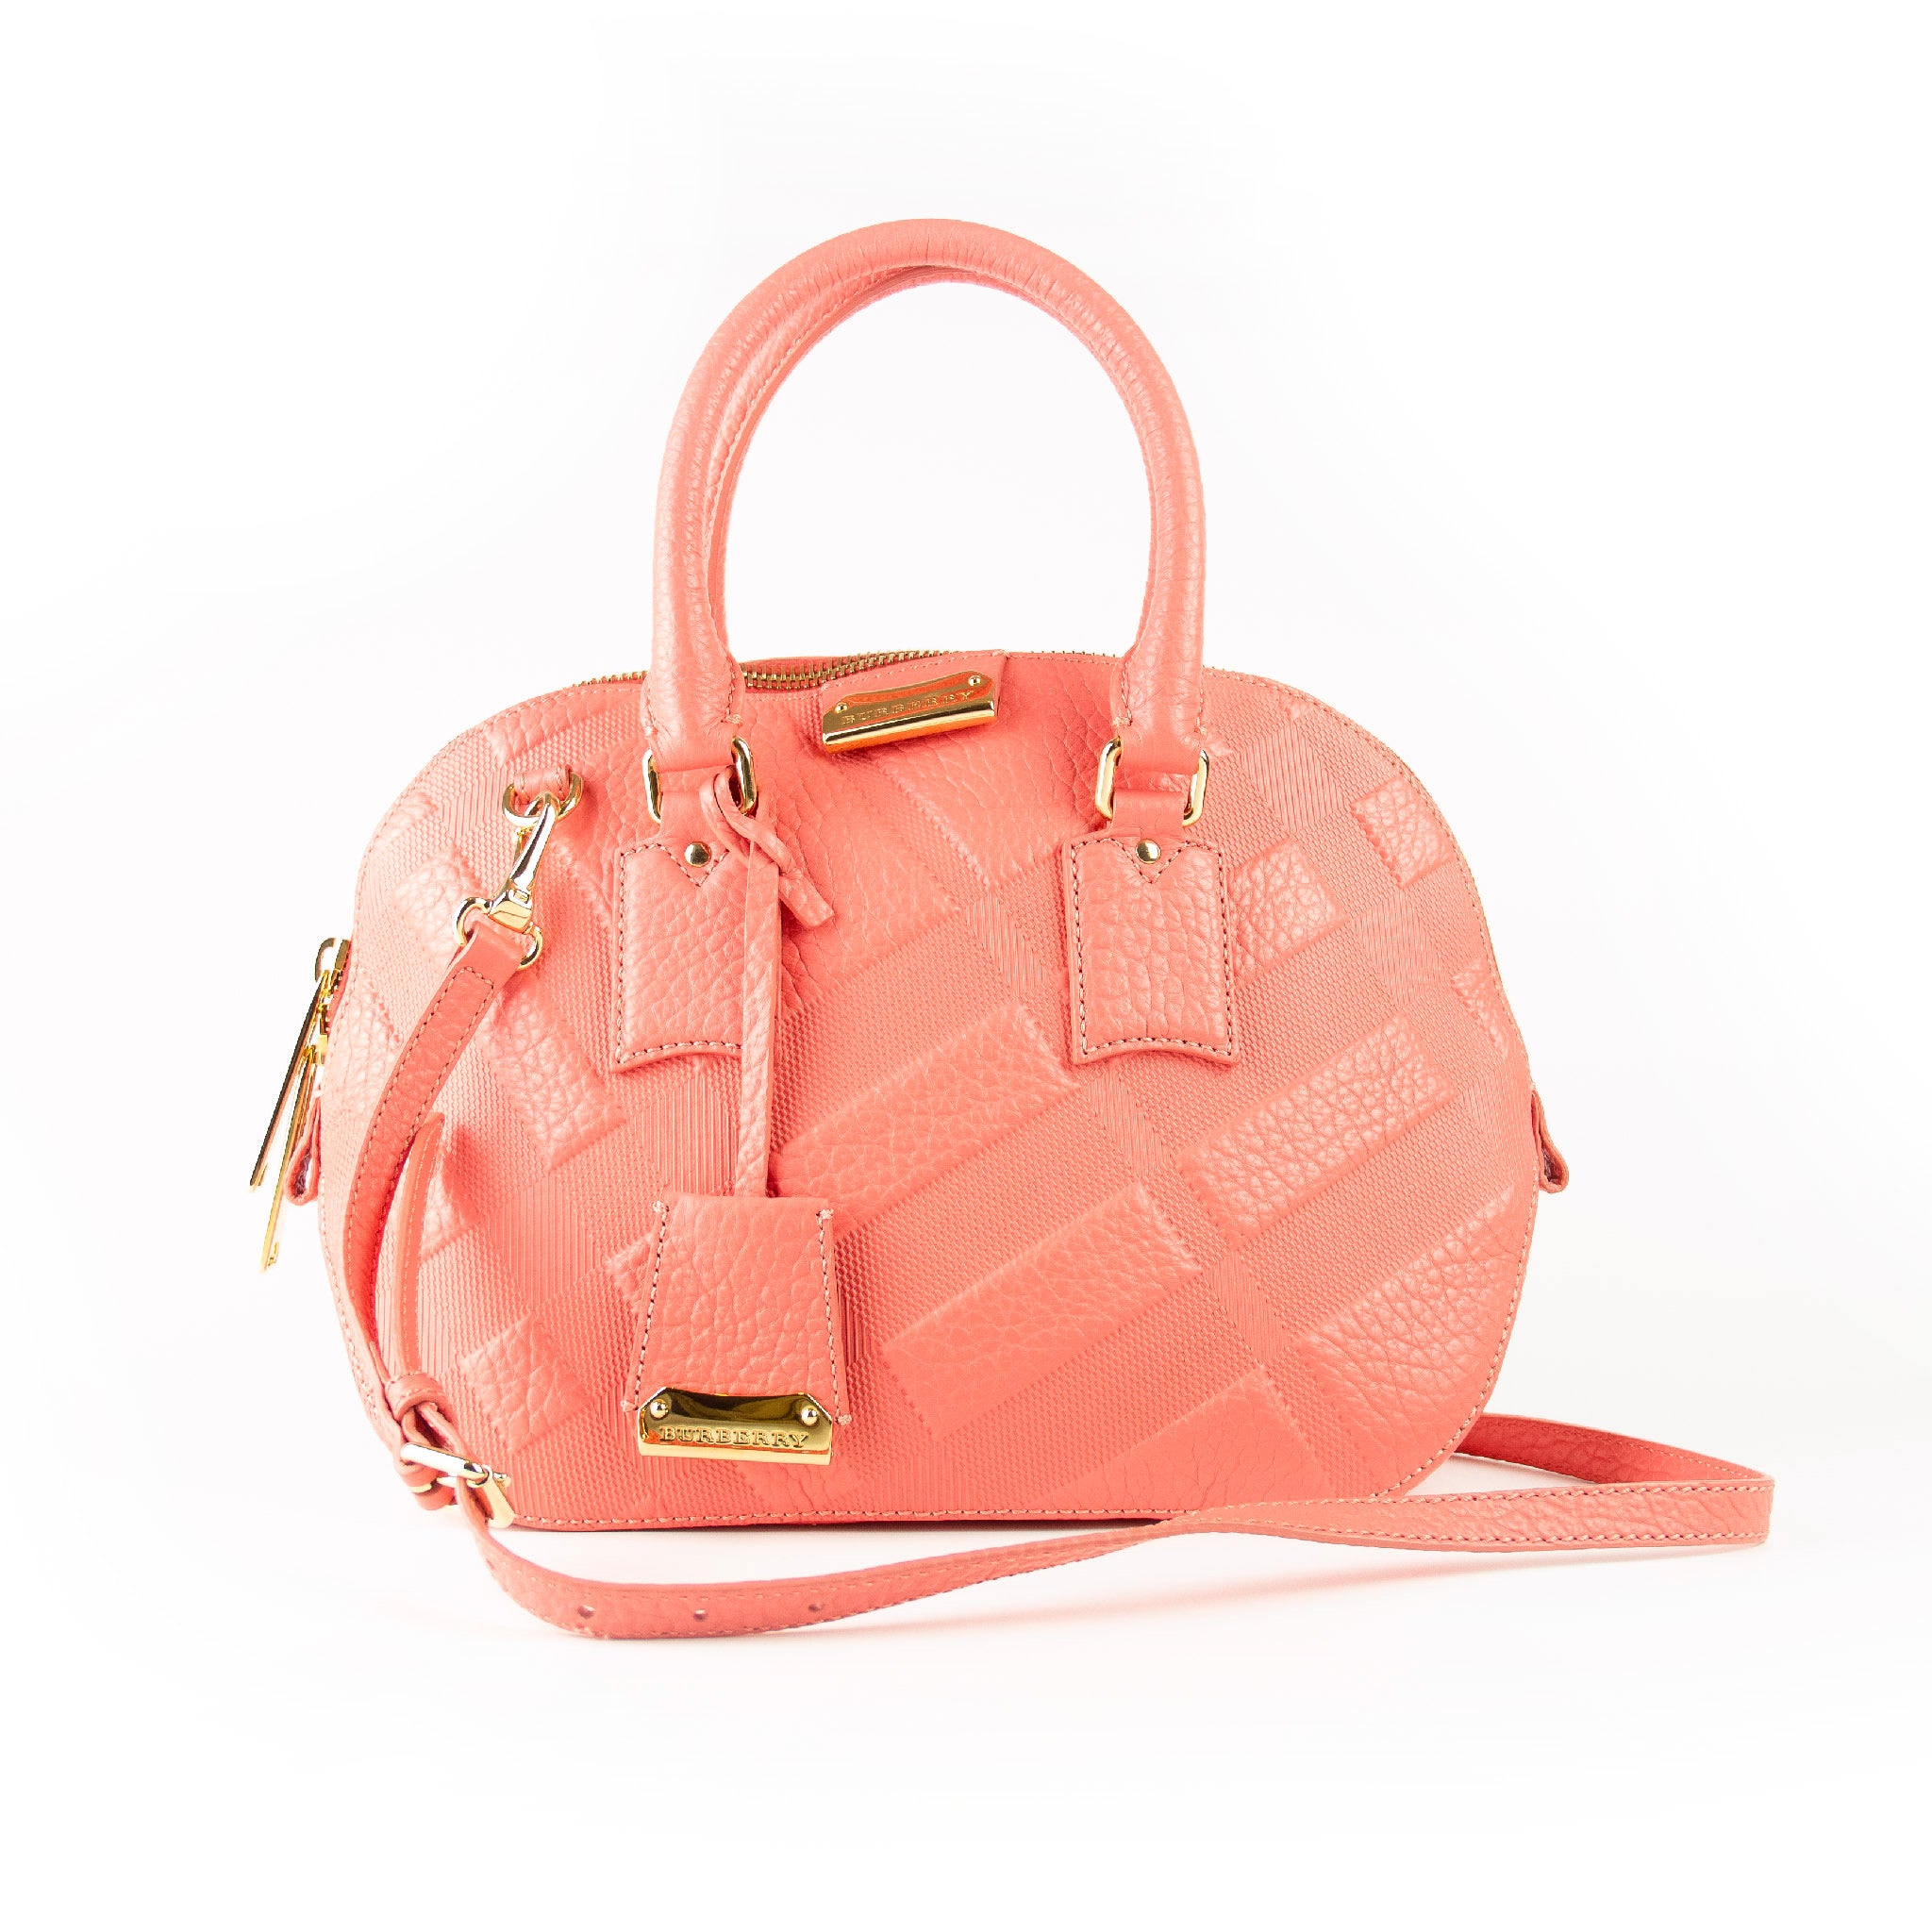 Billede af Burberry 2way læder pink håndtaske med rem